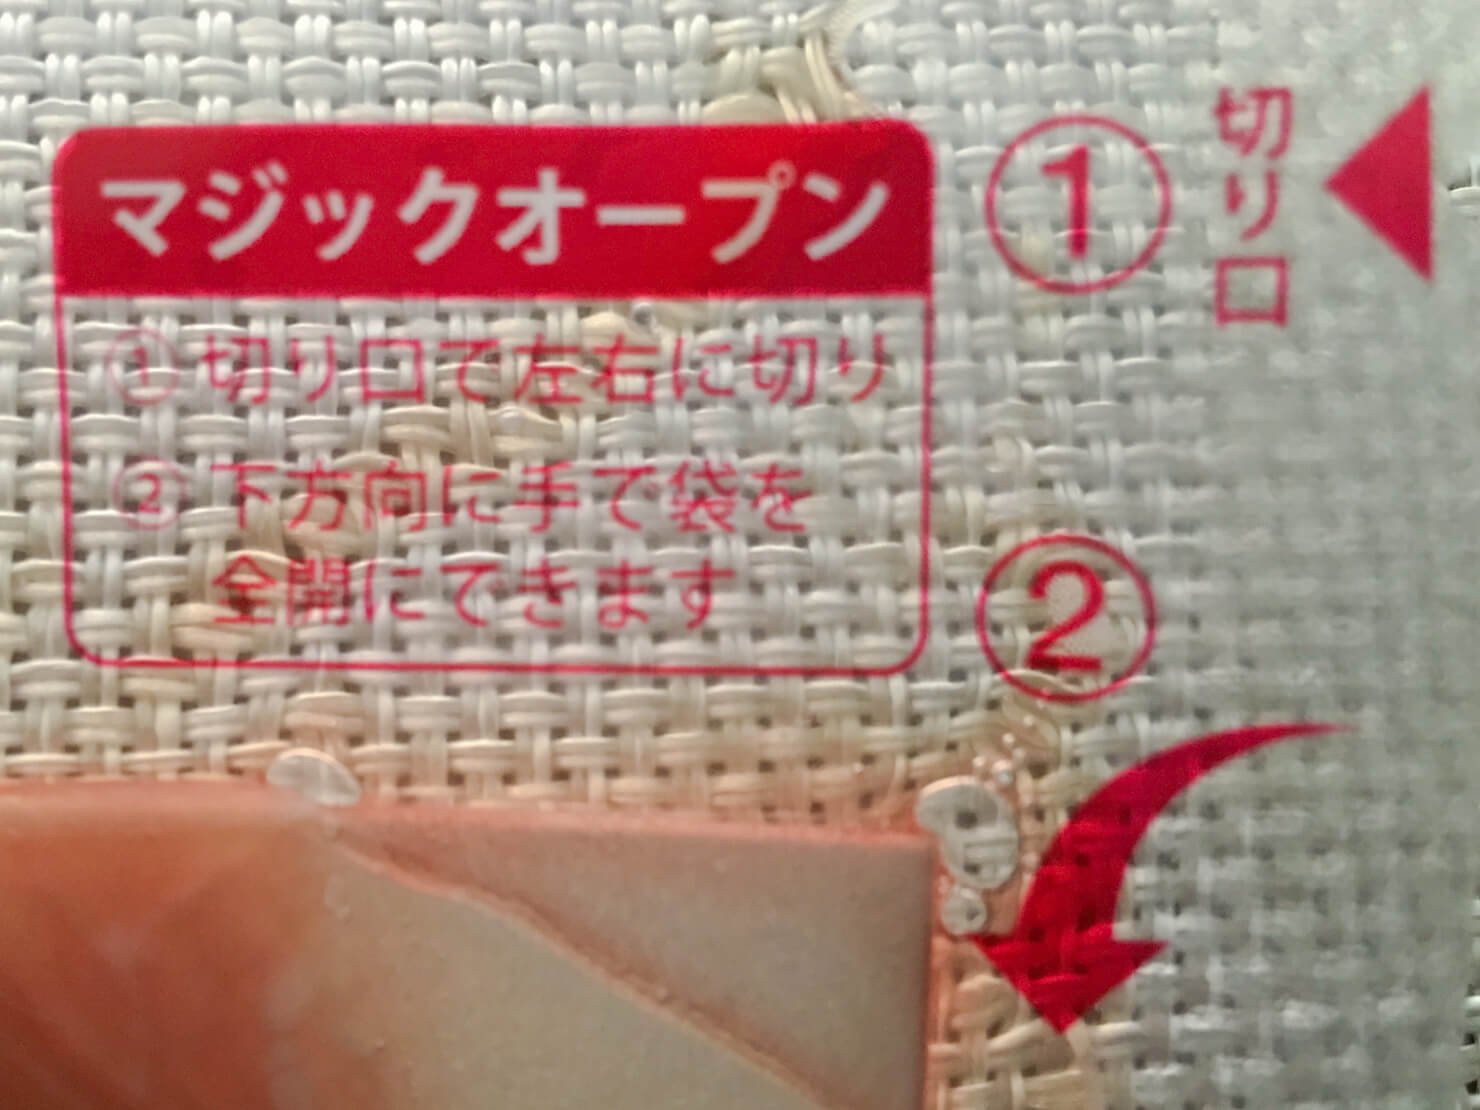 藤井ファームの豚肉のパッケージの写真